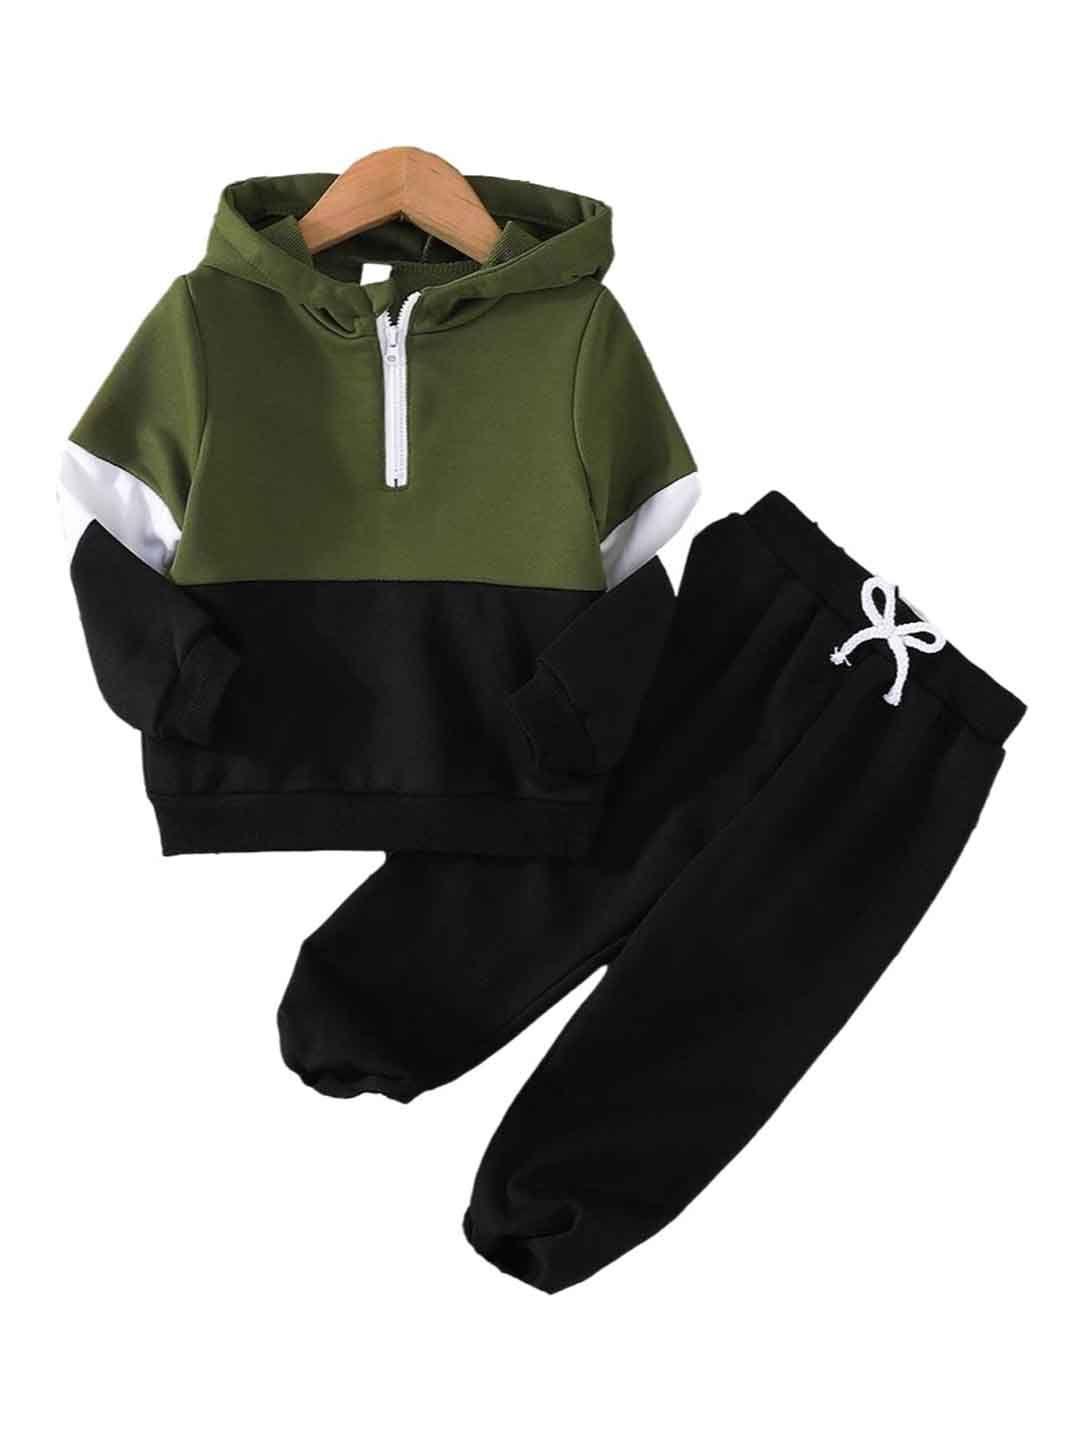 stylecast boys green & black colourblocked hooded t-shirt with pyjamas